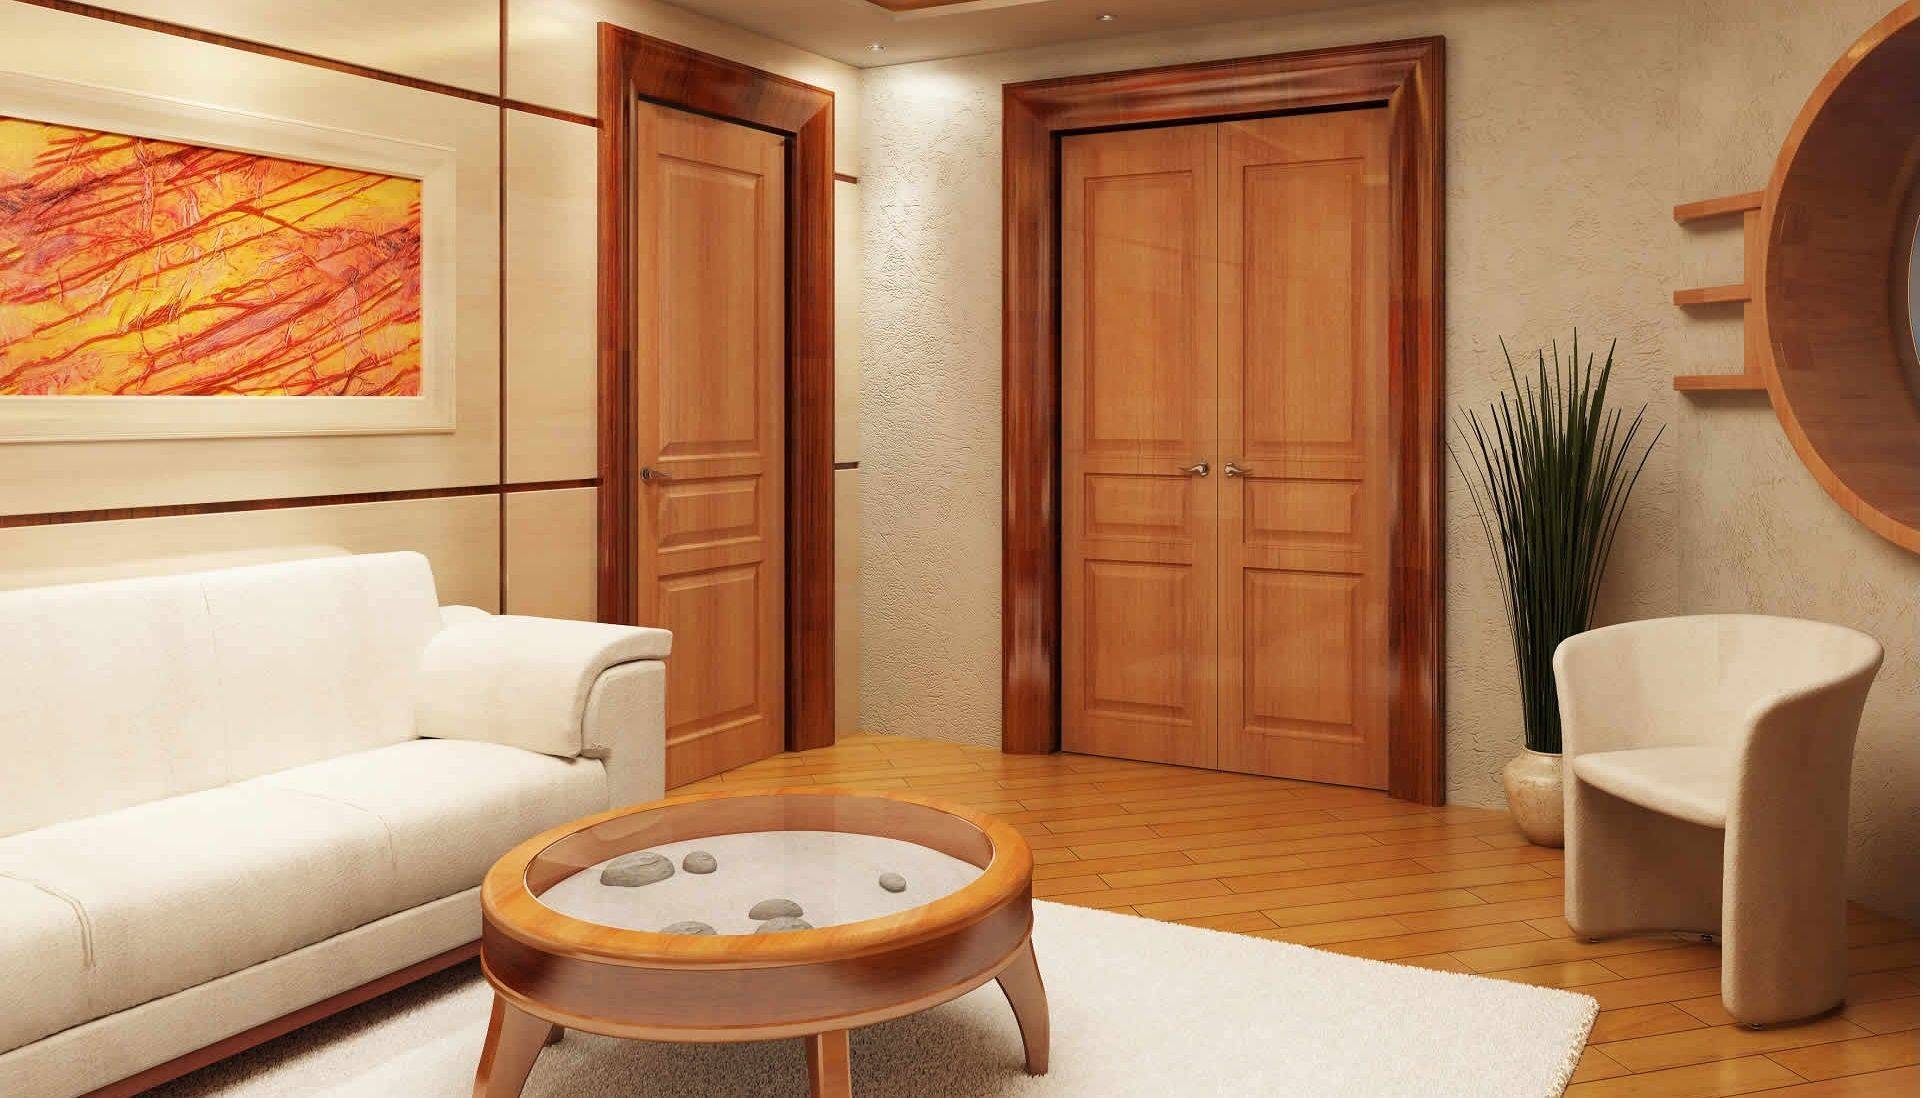 Дизайн проходной гостиной: 65 реальных фото интерьеров, советы дизайнера